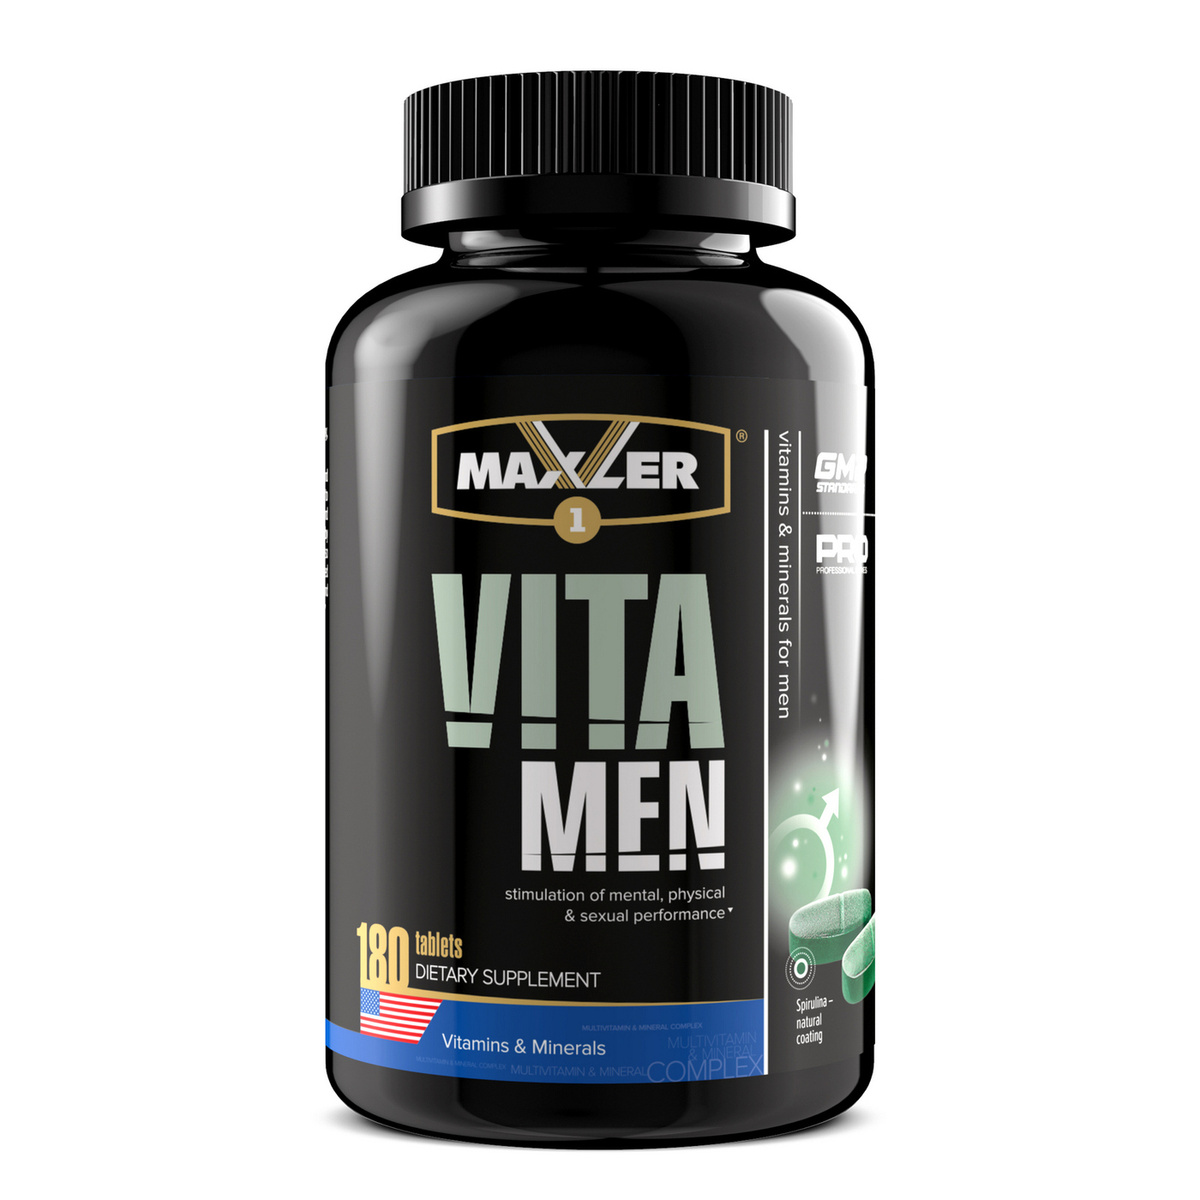 Vitaminok férfiaknak 50 év. A férfiak legjobb vitamin komplexeinek minősítése